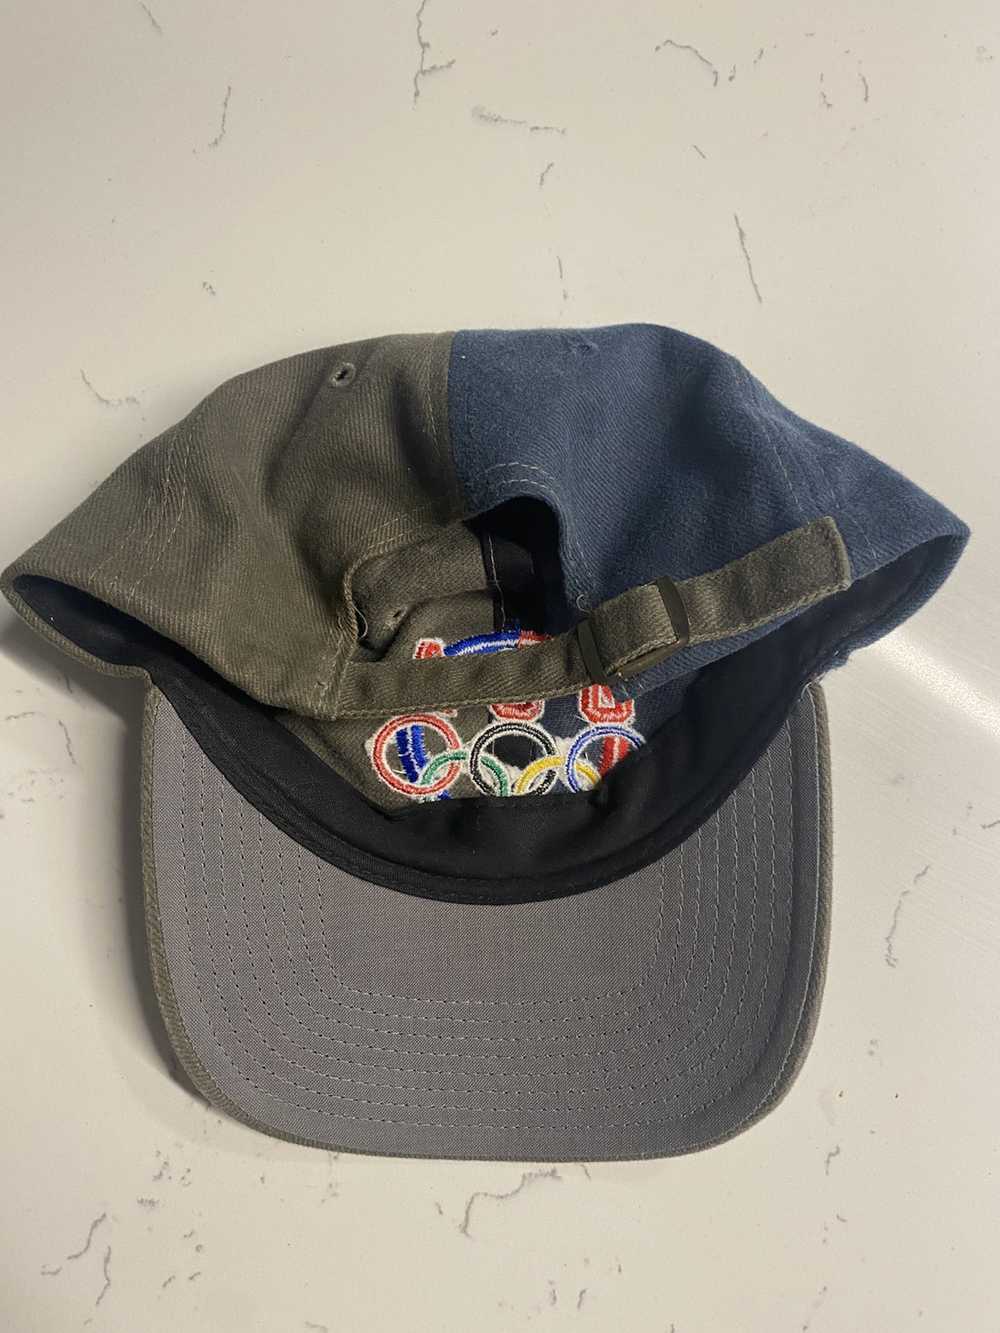 Usa Olympics × Vintage Vintage Olympics hat - image 2